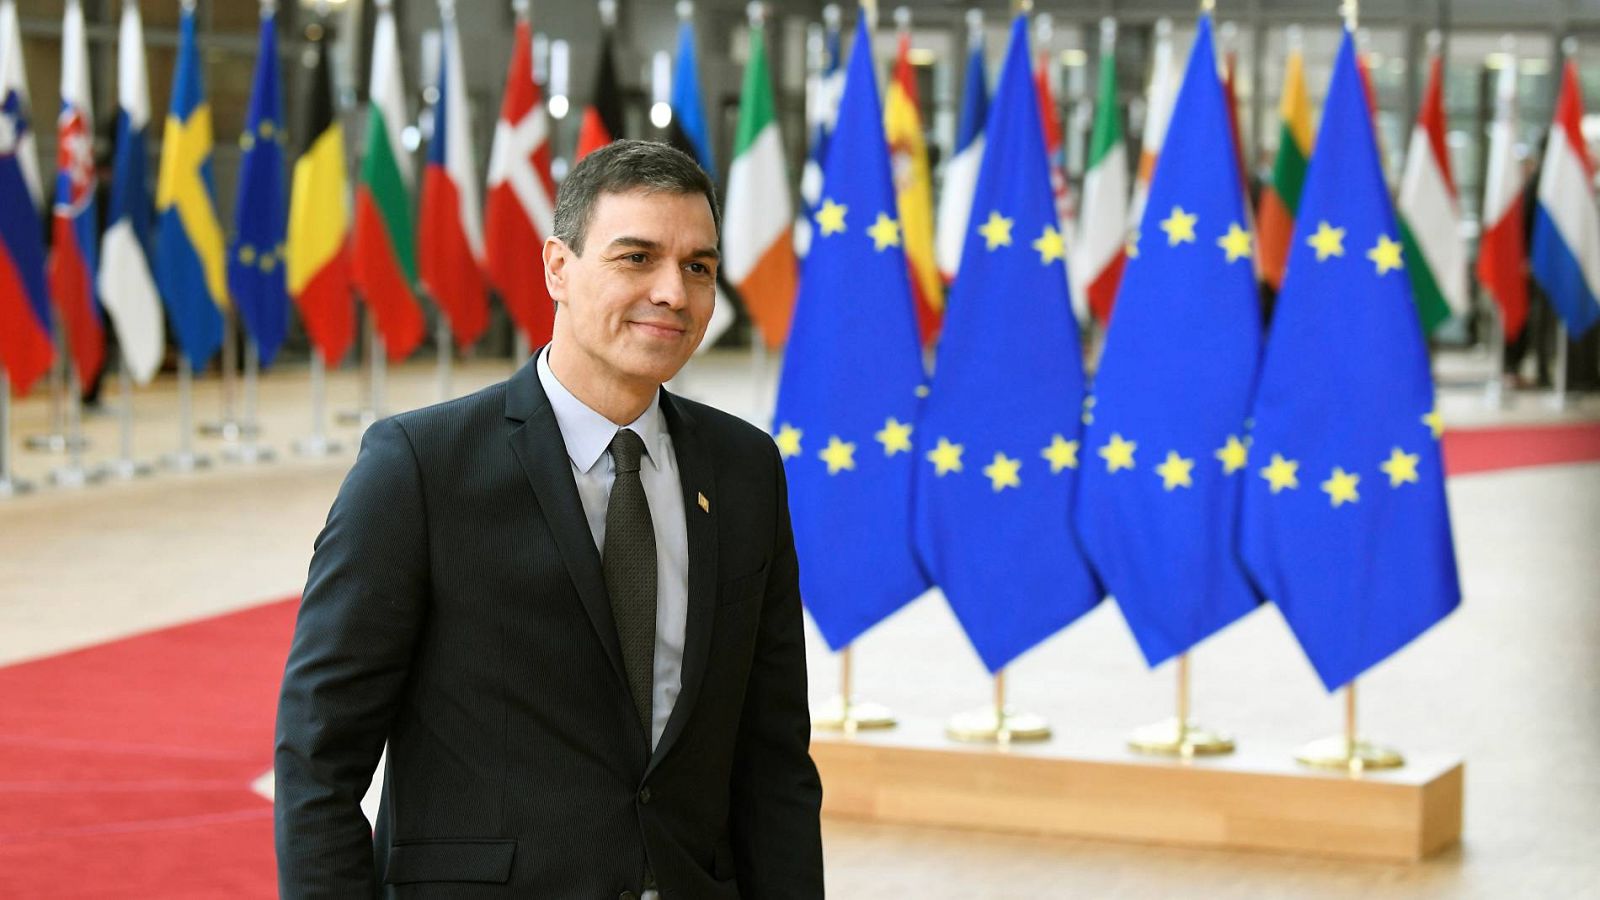 El presidente del Gobierno, Pedro Sánchez, durante un encuentro en Bruselas con los líderes europeos el pasado mes de febrero